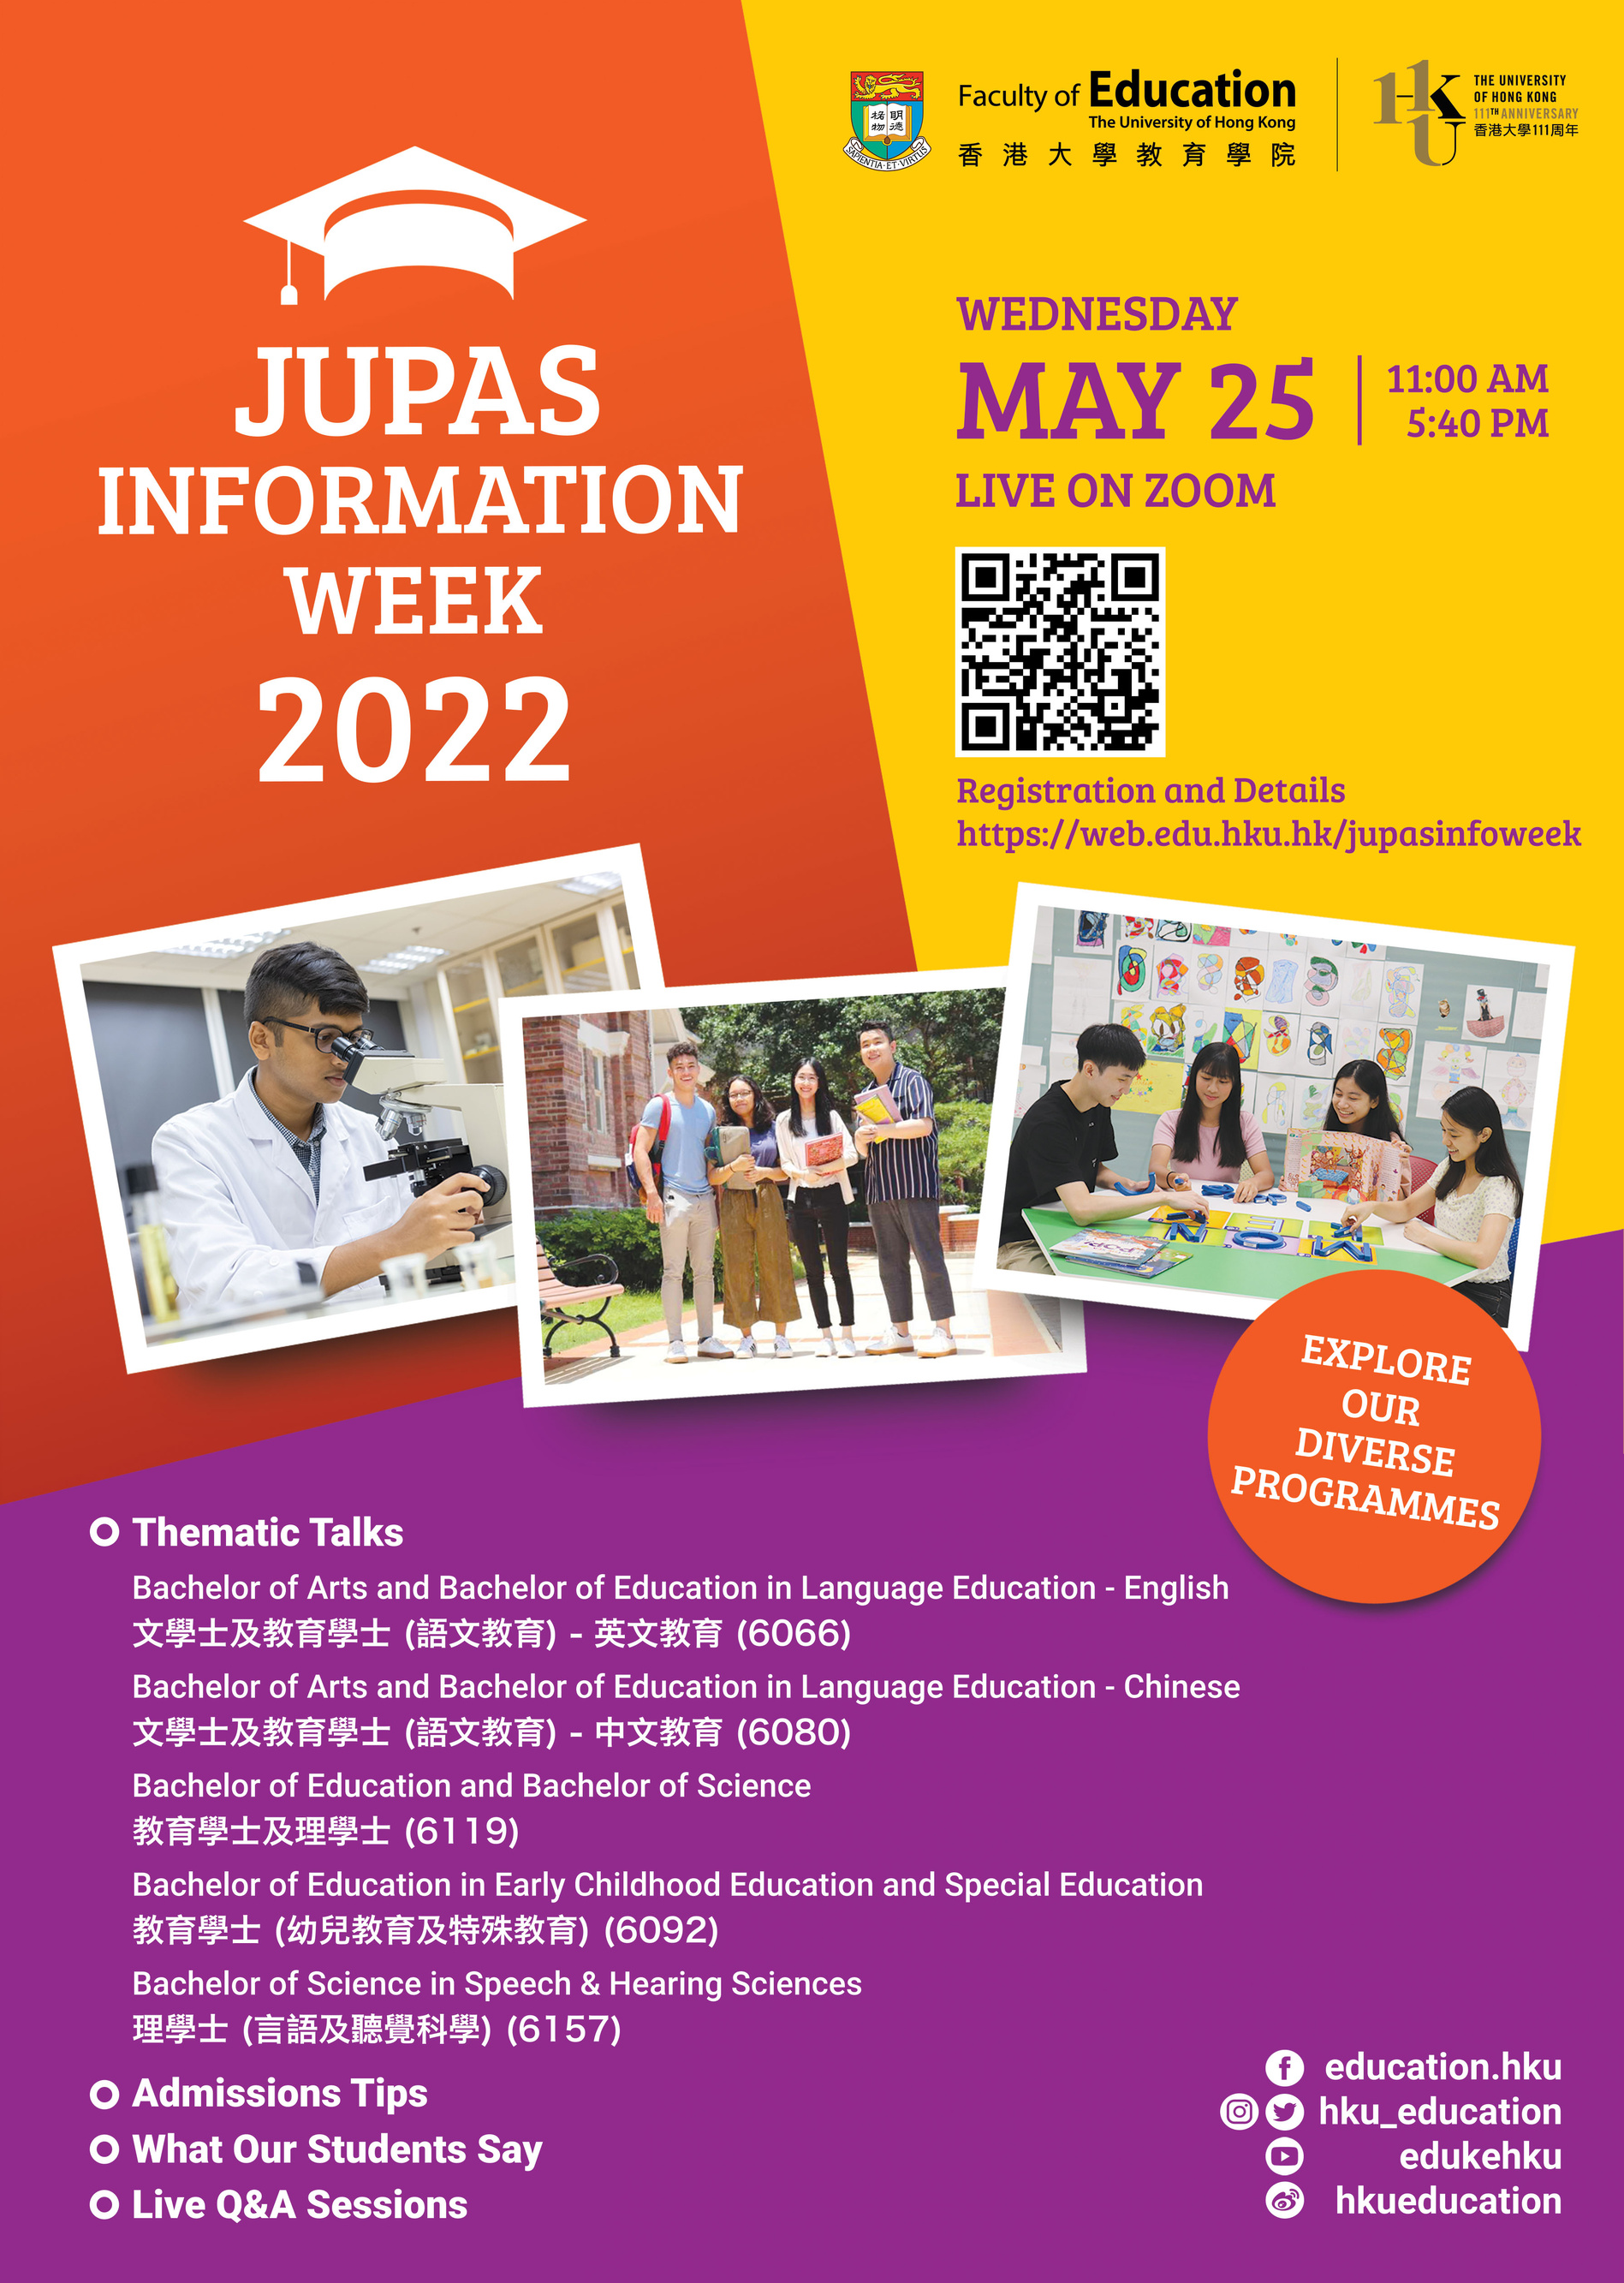 Faculty of Education JUPAS Information Week